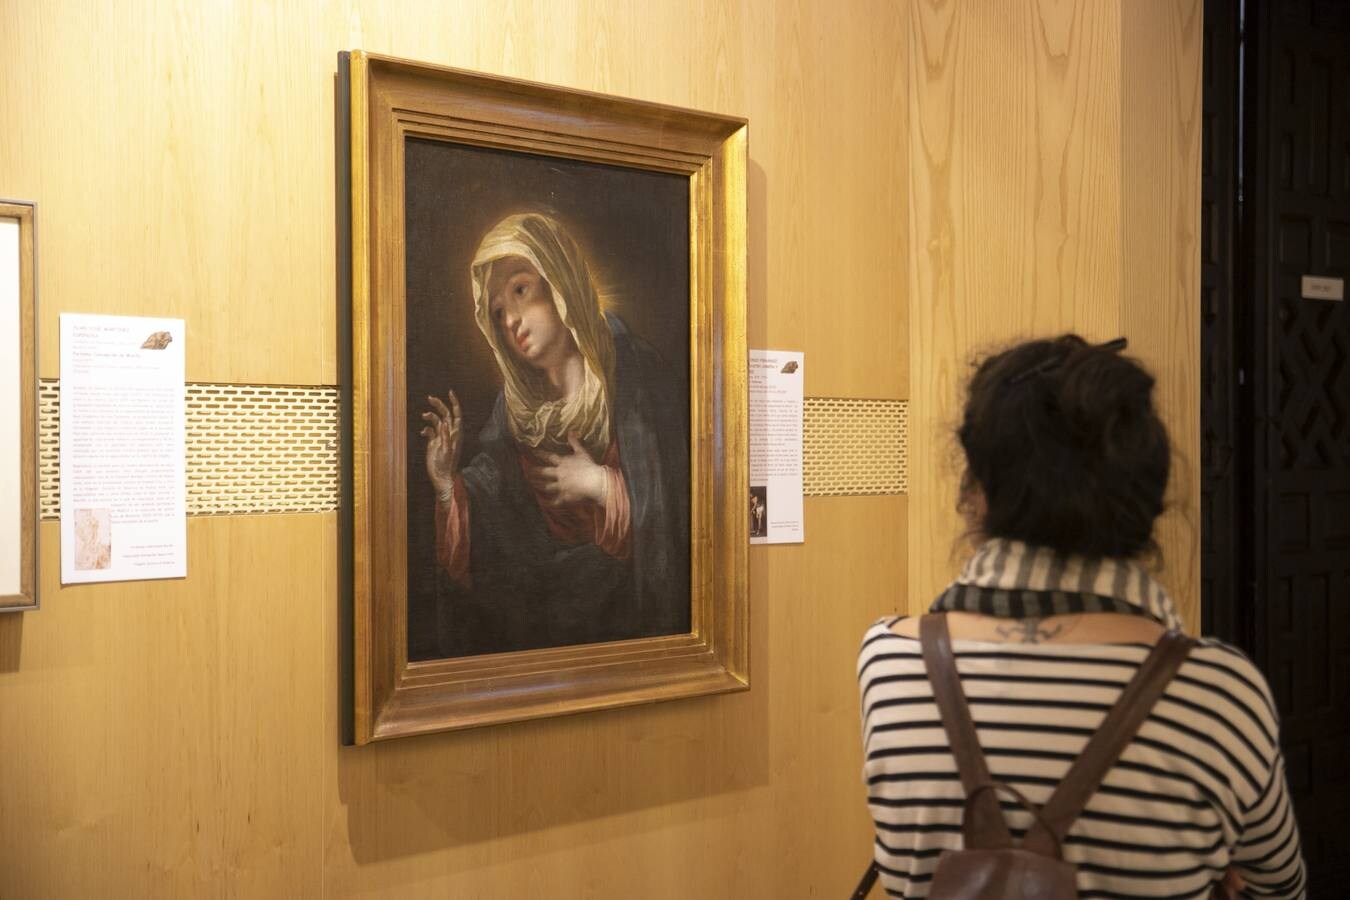 La exposición de Murillo en Córdoba, en imágenes